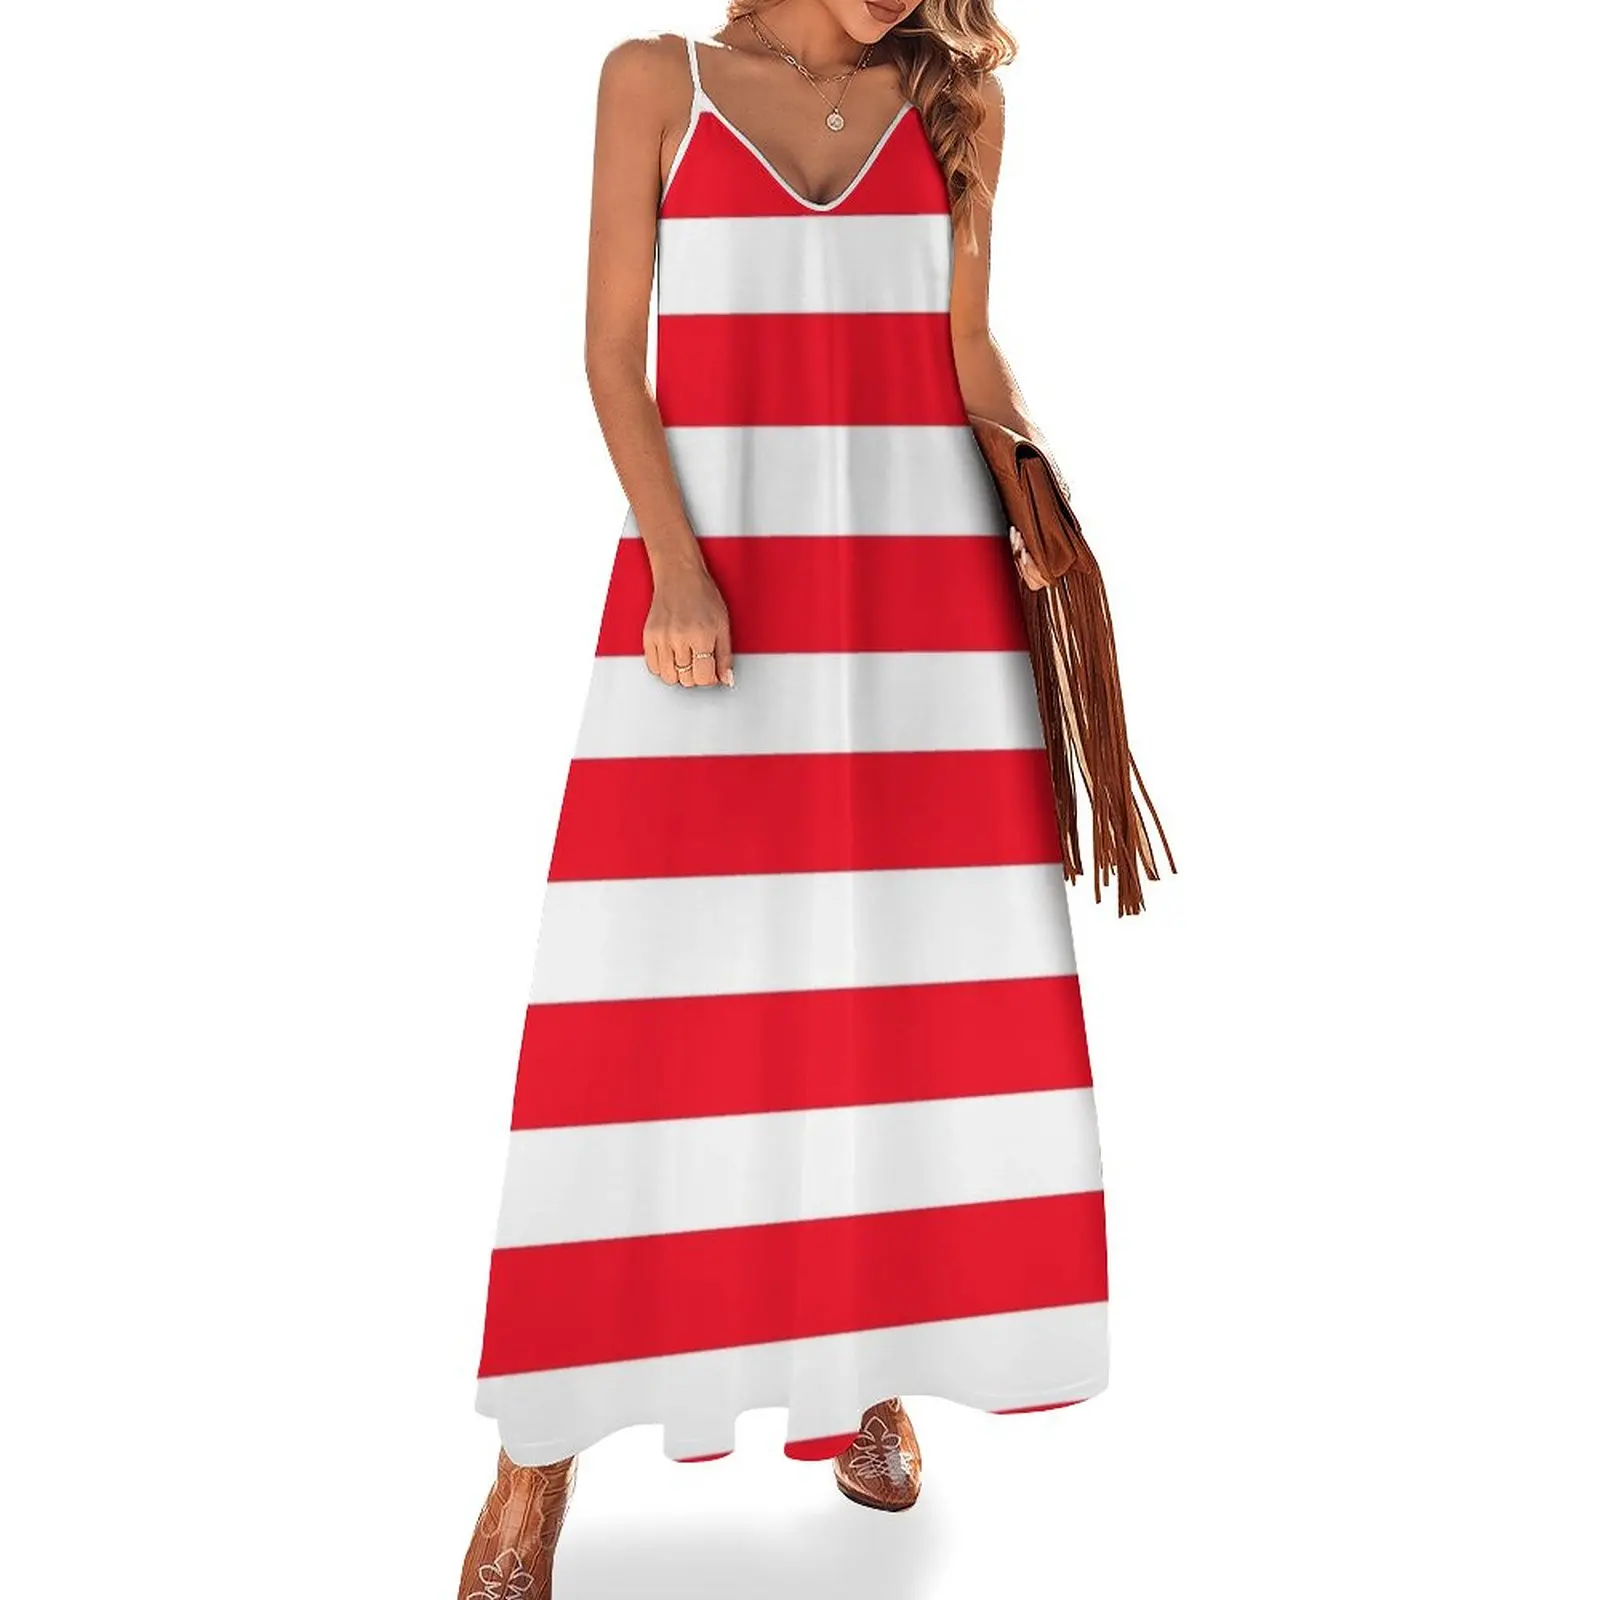 

Aberdeen retro stripes Sleeveless Dress clothes for woman Summer skirt